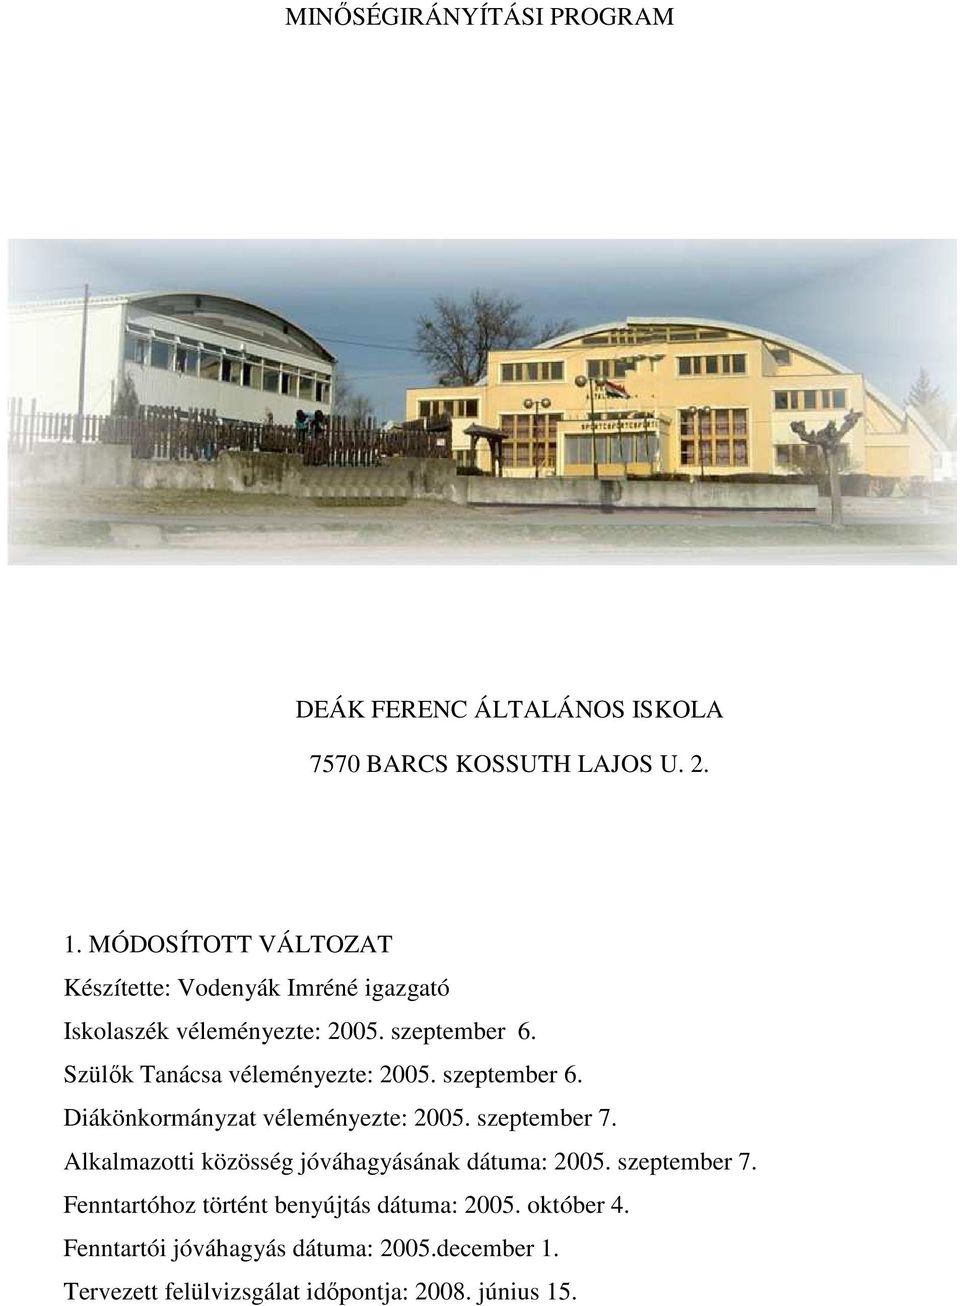 Szülık Tanácsa véleményezte: 2005. szeptember 6. Diákönkormányzat véleményezte: 2005. szeptember 7.